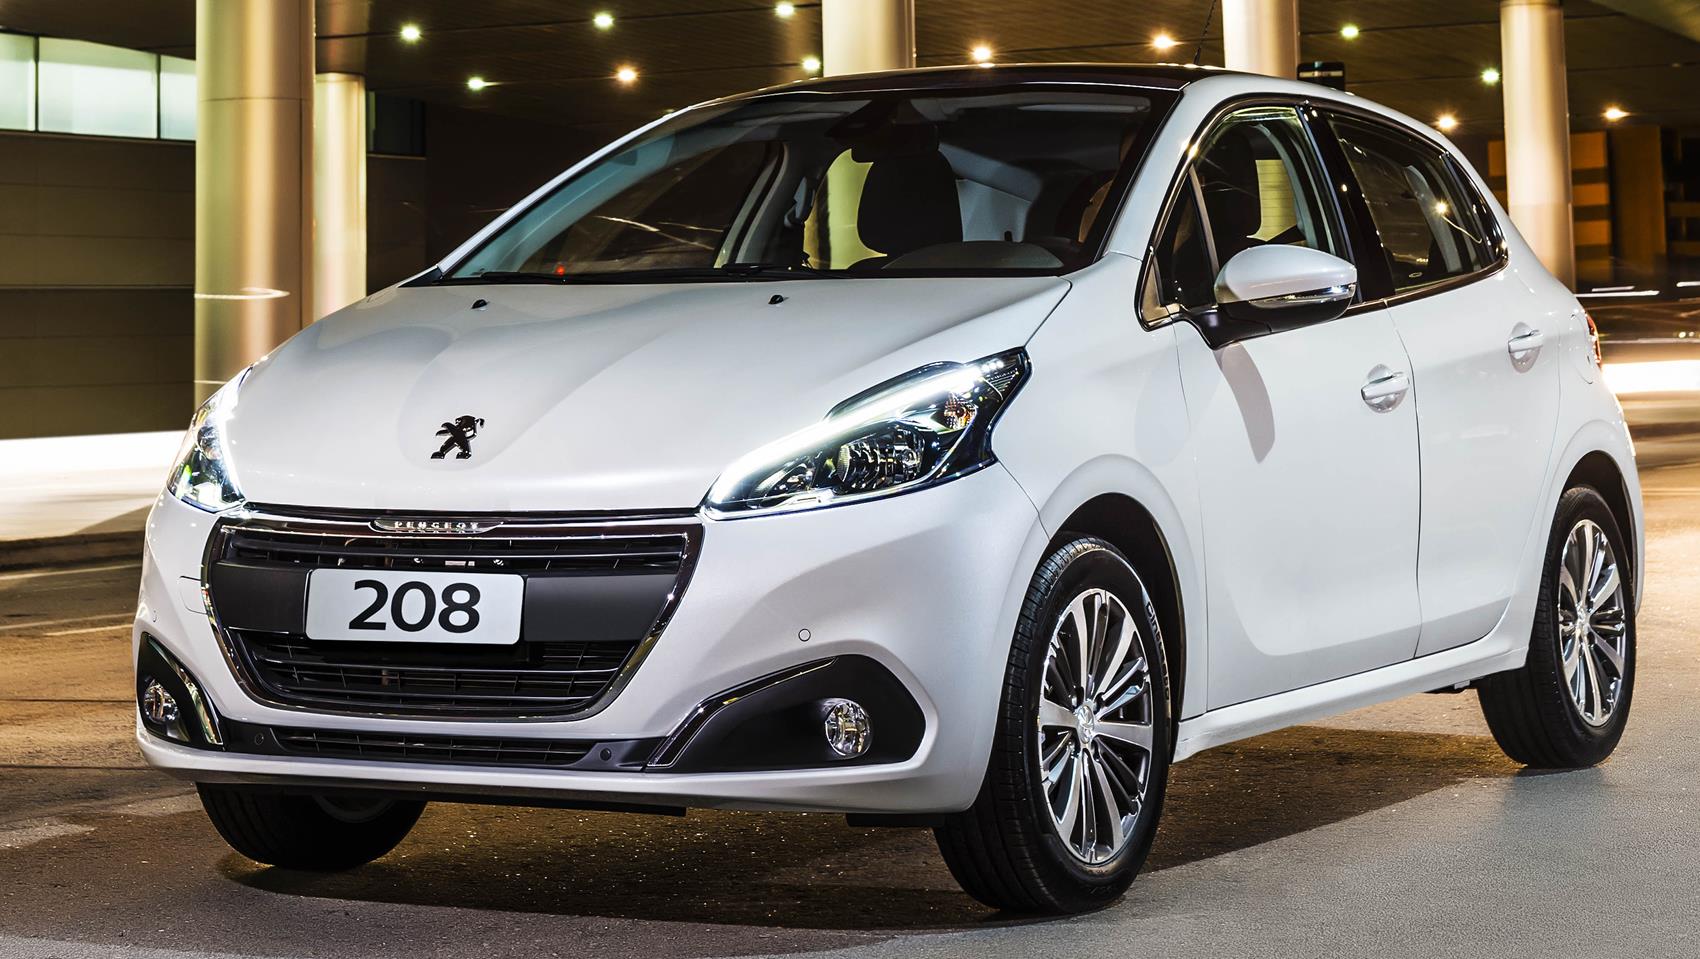 O eficiente Peugeot 208 com motor 1.2, um dos carros mais econômicos do Brasil, paga mais imposto do que um veículo 1.0 com tecnologia ultrapassada. 